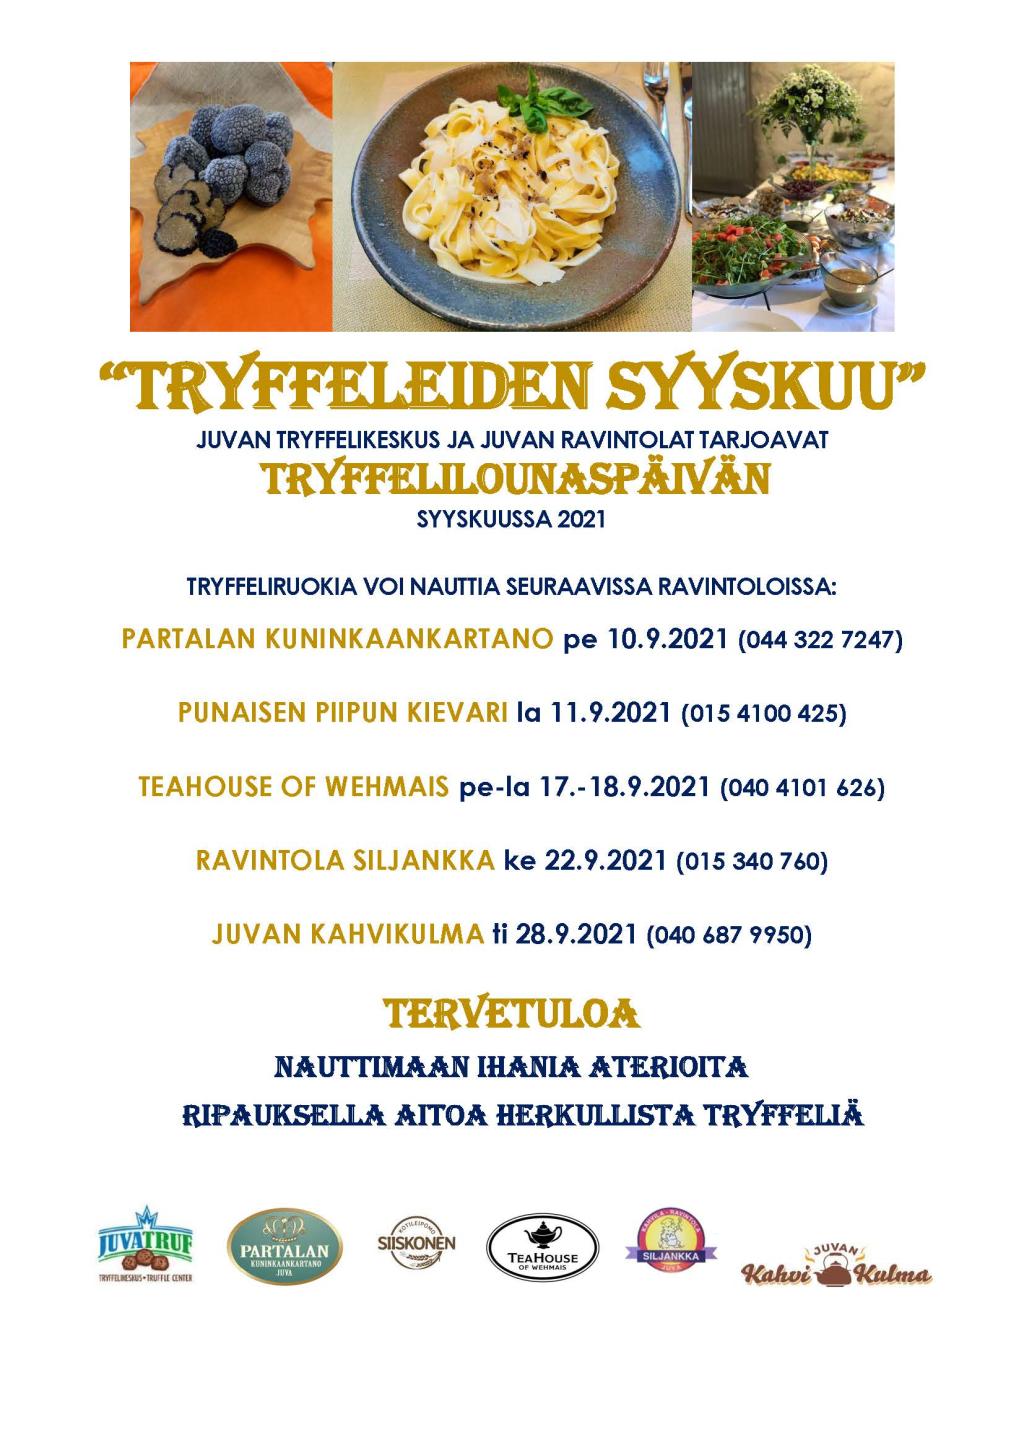 “Tryffeleiden syyskuu” on Juvan Tryffelikeskuksen ja Juvan ravintoloiden yhteistyönä toteutettavat tryffelilounaspäivät, jolloin lounasasiakkaat Juvalta ja kauempaakin pääsevät nauttimaan aitoja tryffeliruokia syyskuussa 2021. 